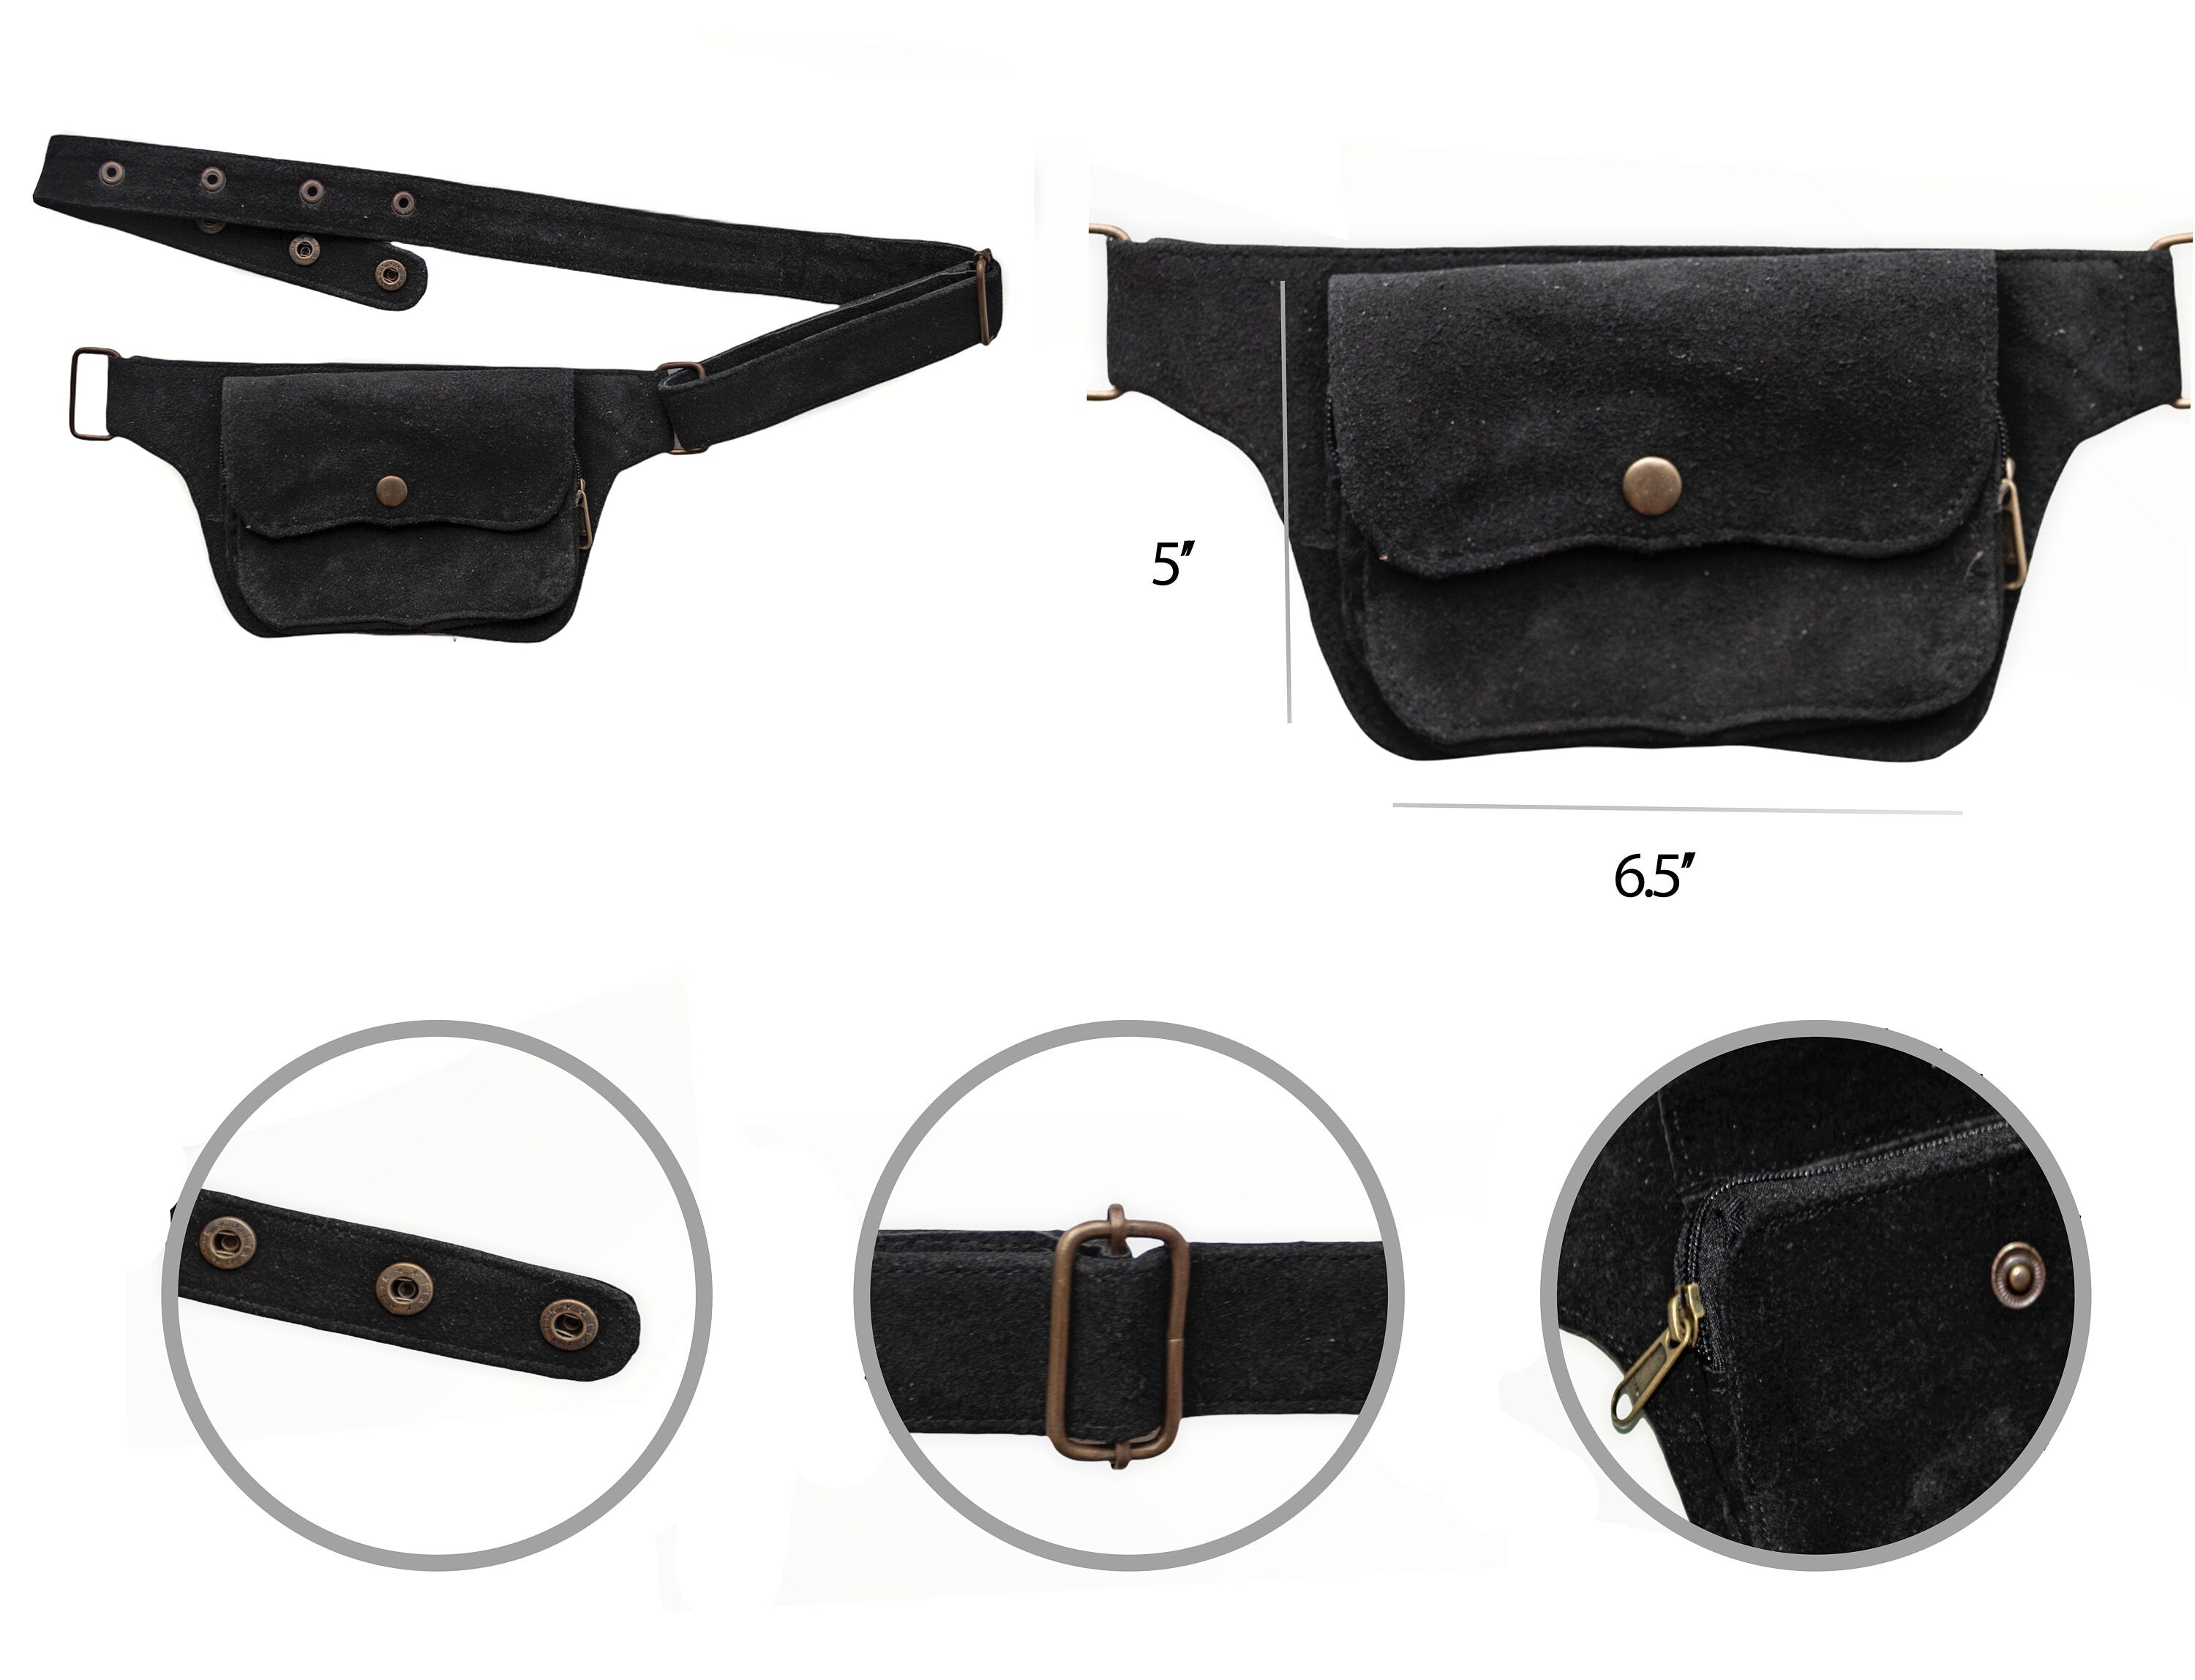 Unisex Leather Utility Belt | Black Suede, 2 Pocket | travel, burning man, festival, hands-free style | flask holder